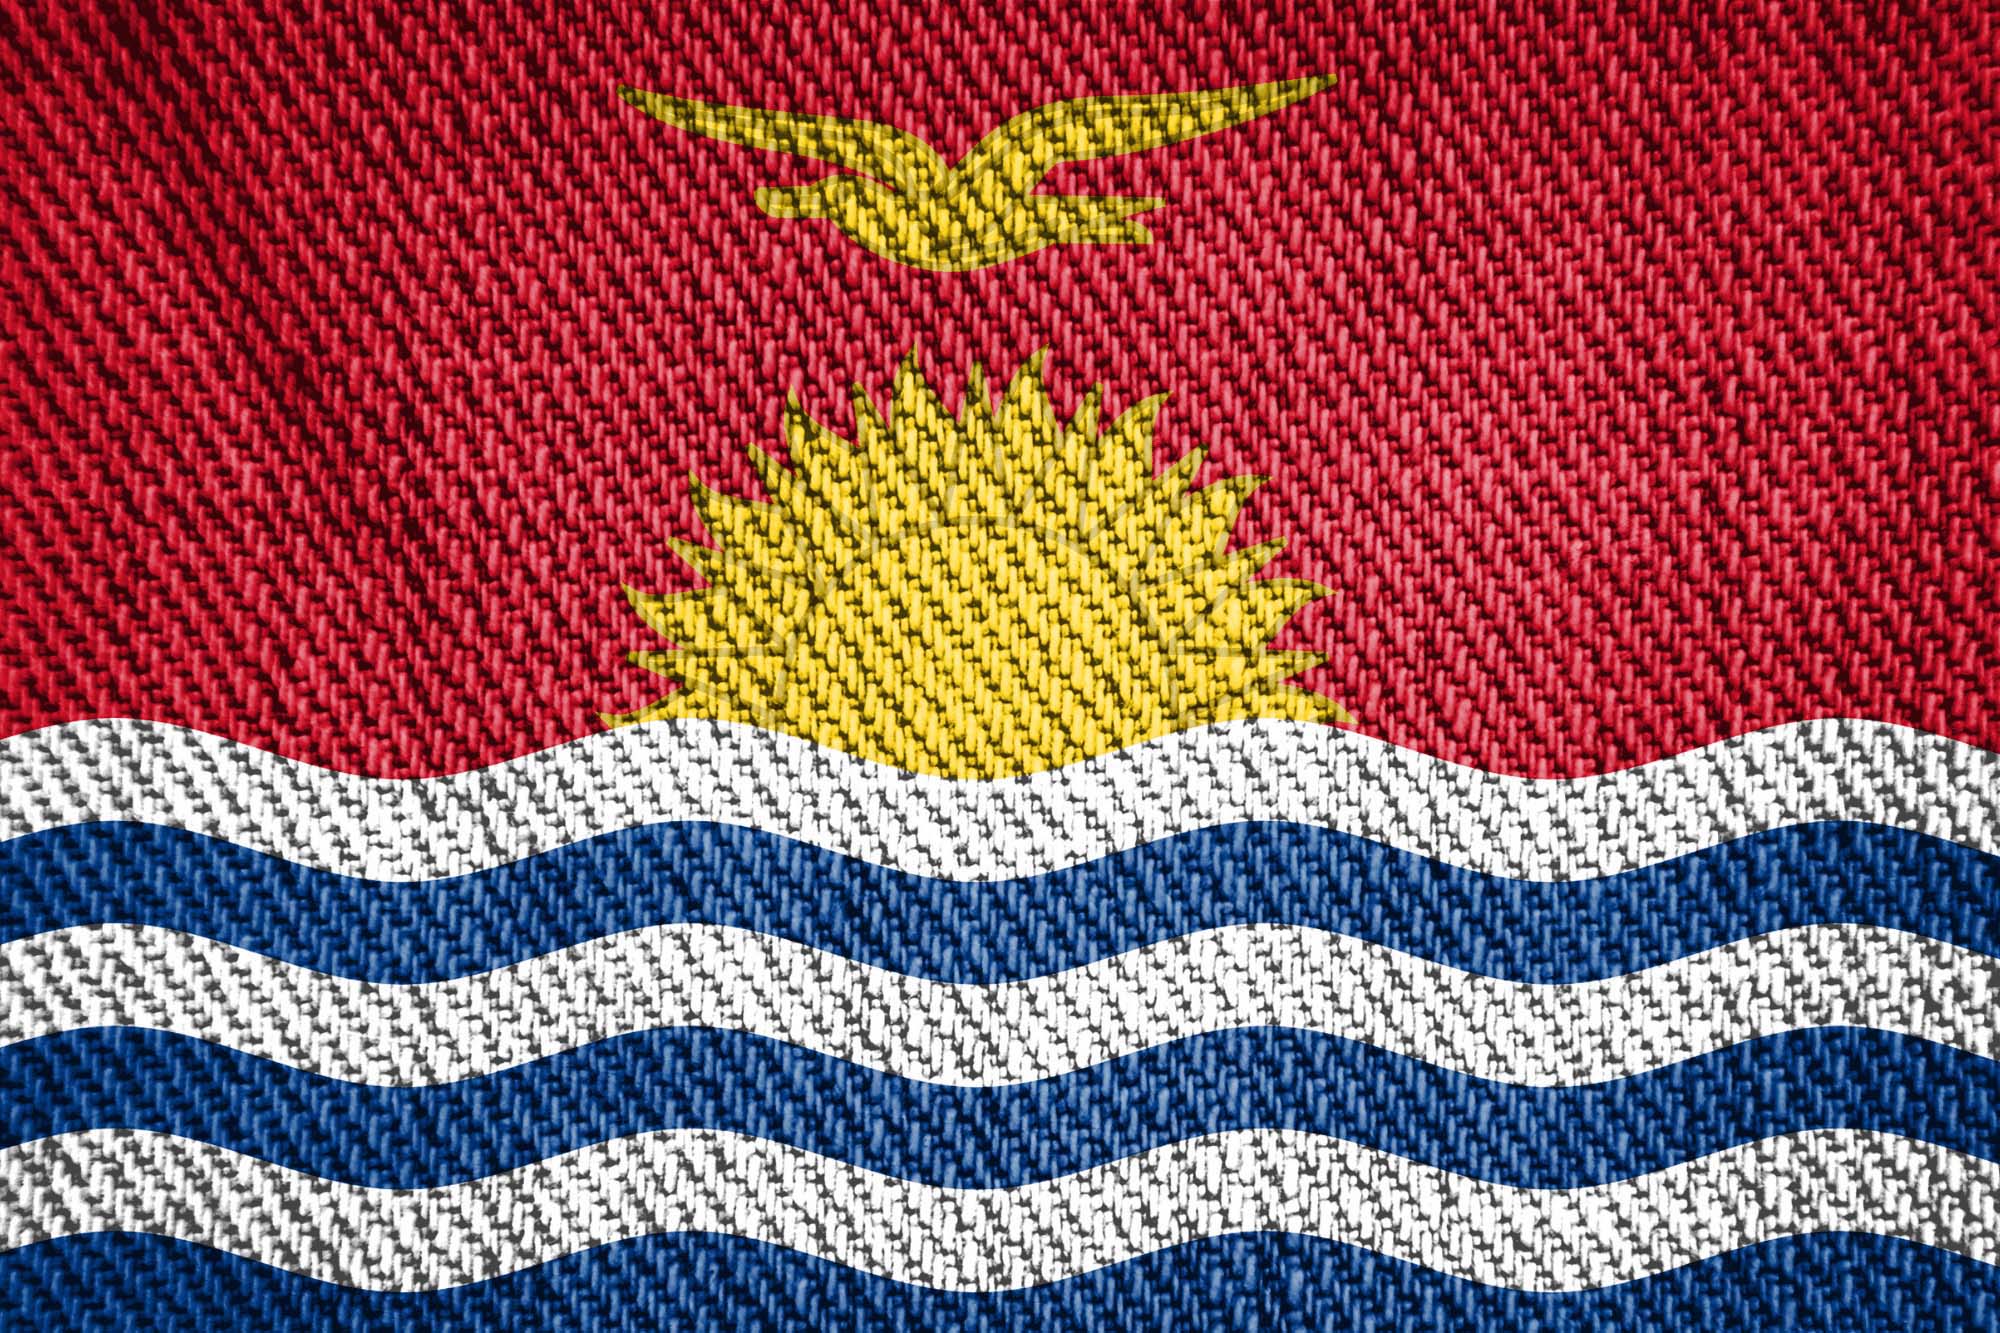 Kiribati flag printed on canvas